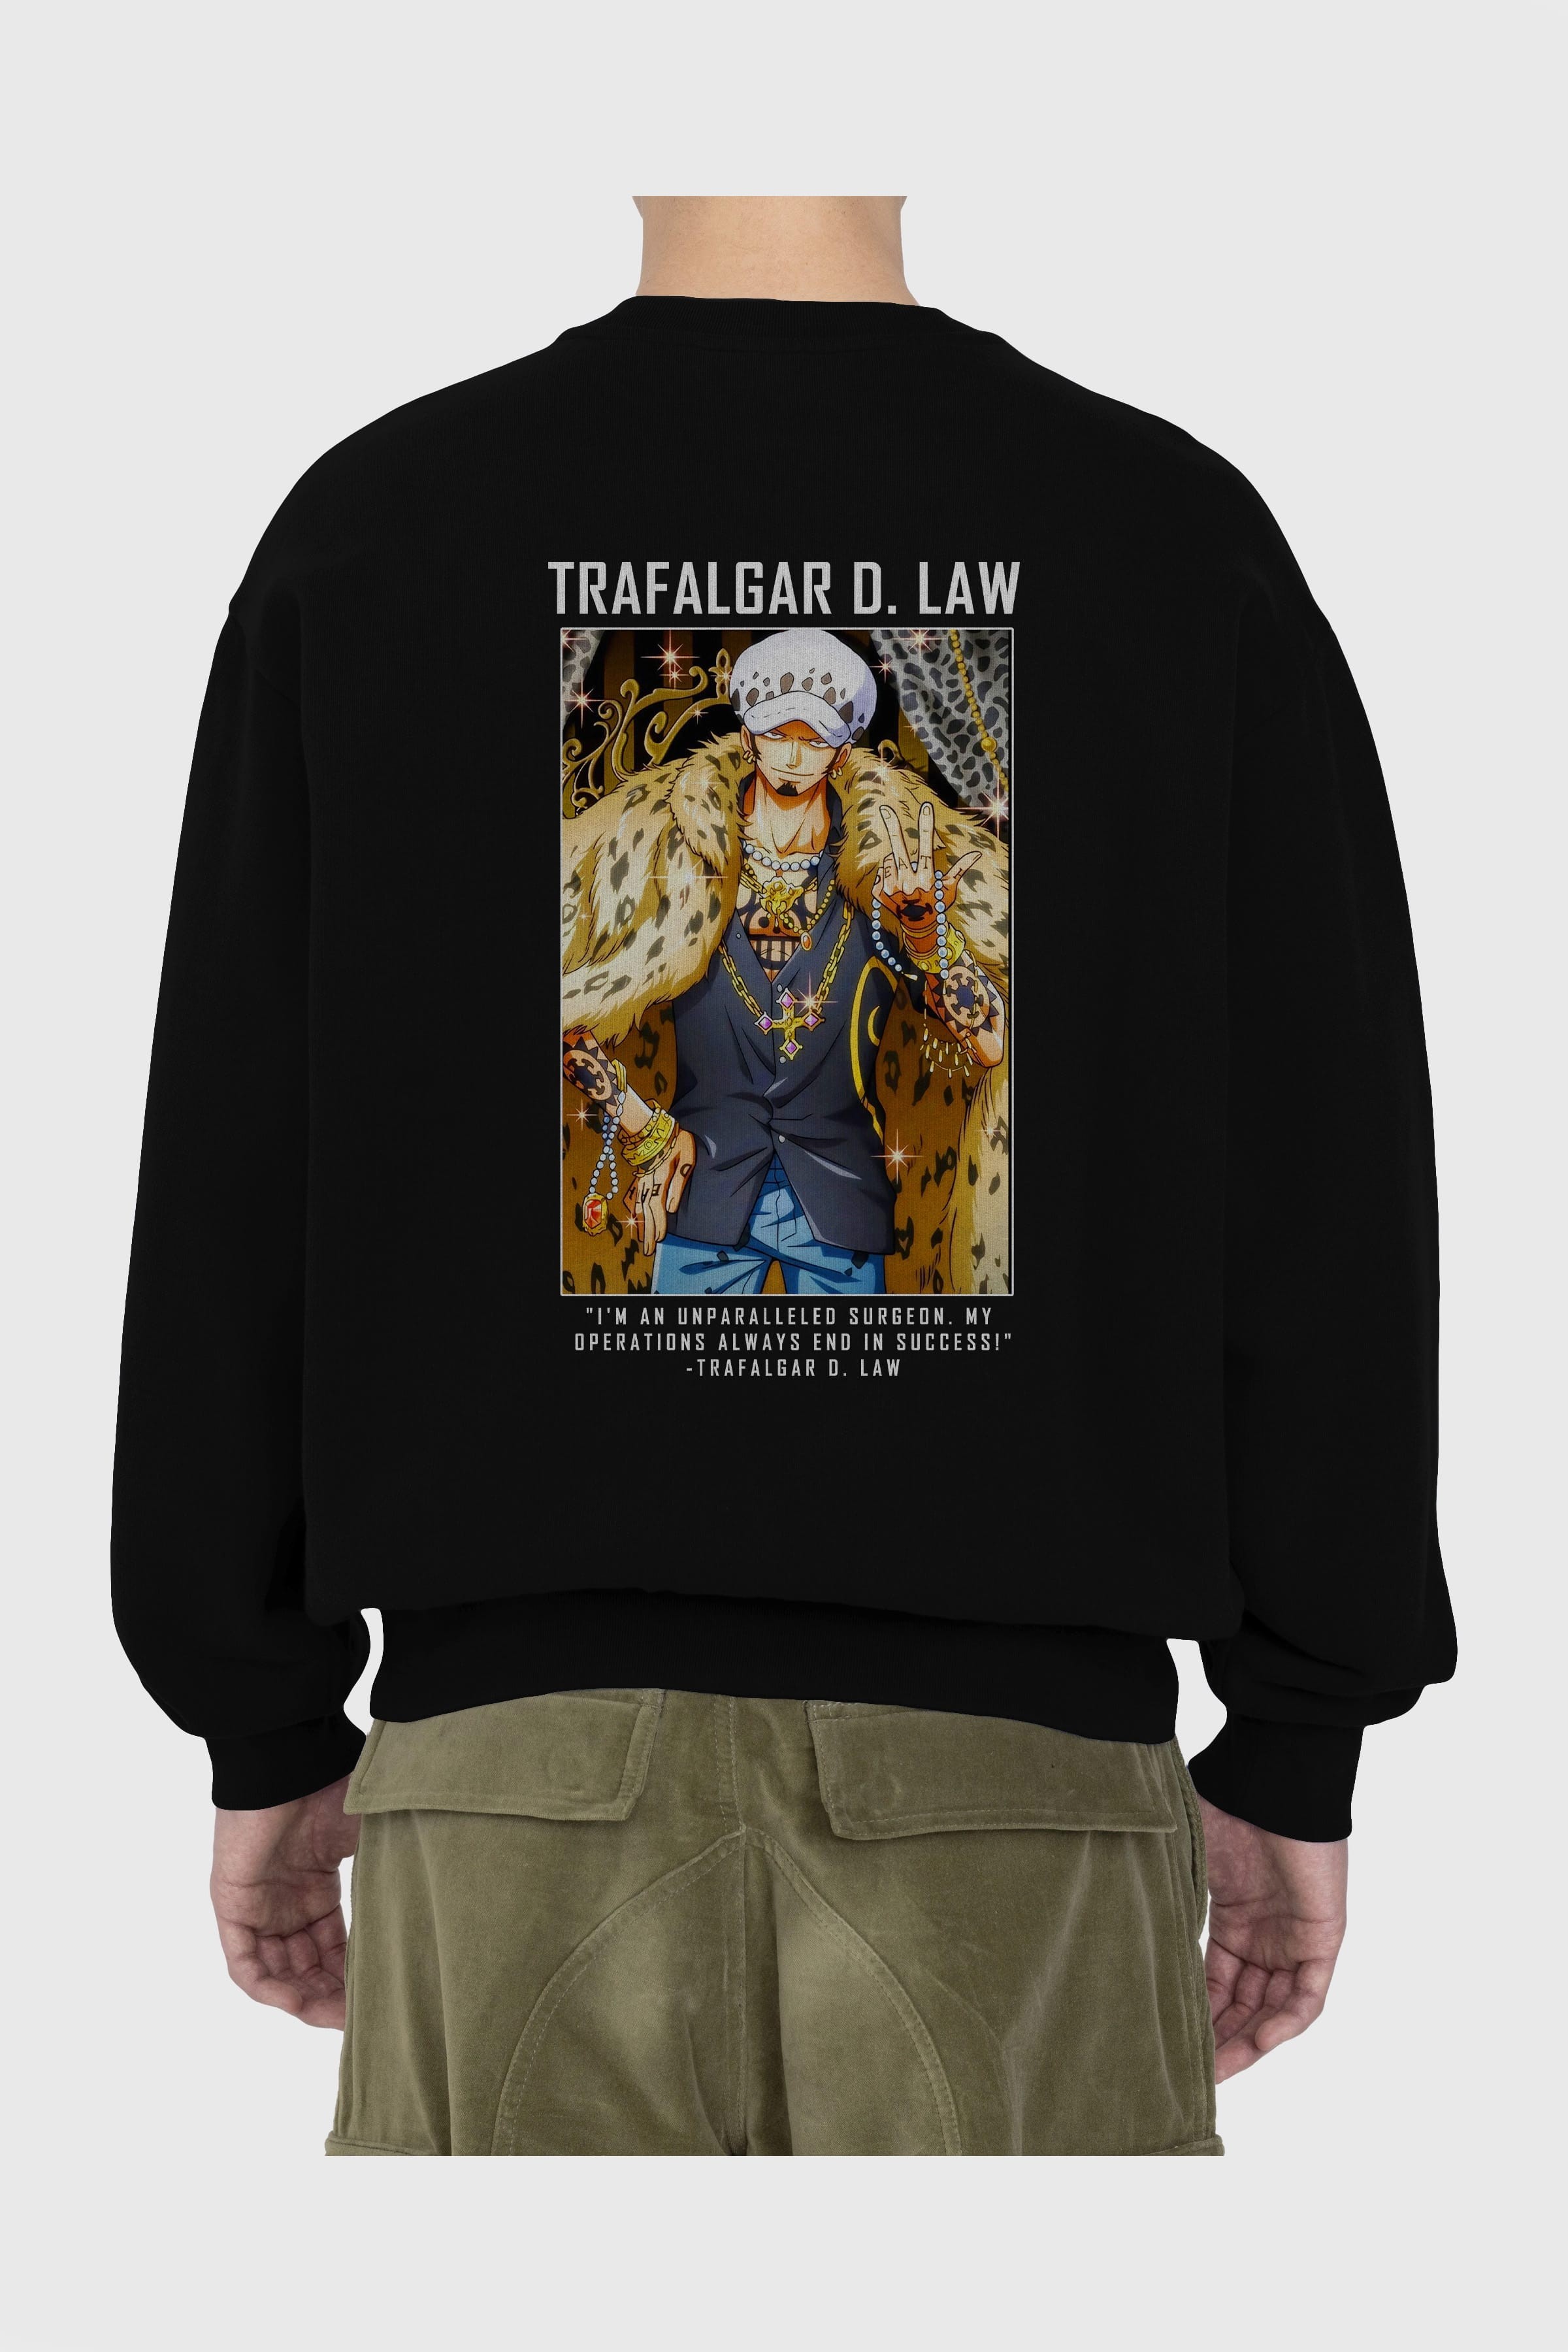 Trafalgar D. Water Law 2 Arka Baskılı Anime Oversize Sweatshirt Erkek Kadın Unisex